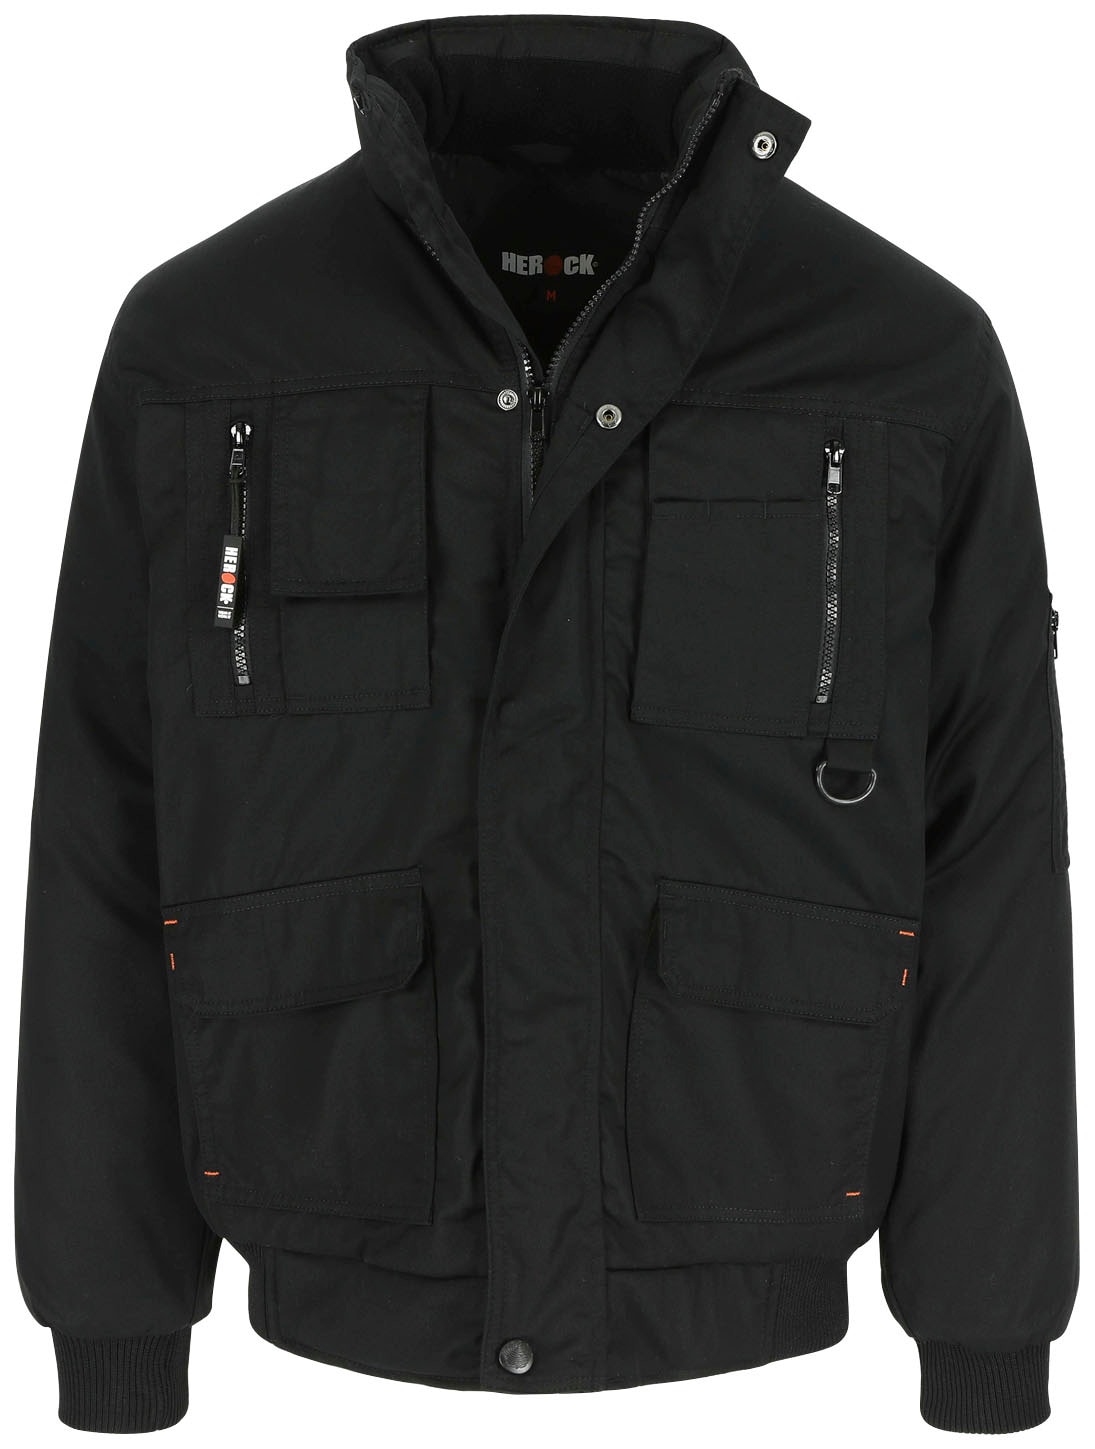 Herock Arbeitsjacke »Typhon Jacke«, Wasserabweisend viele robust, Fleece-Kragen, mit online bestellen Taschen, viele Farben